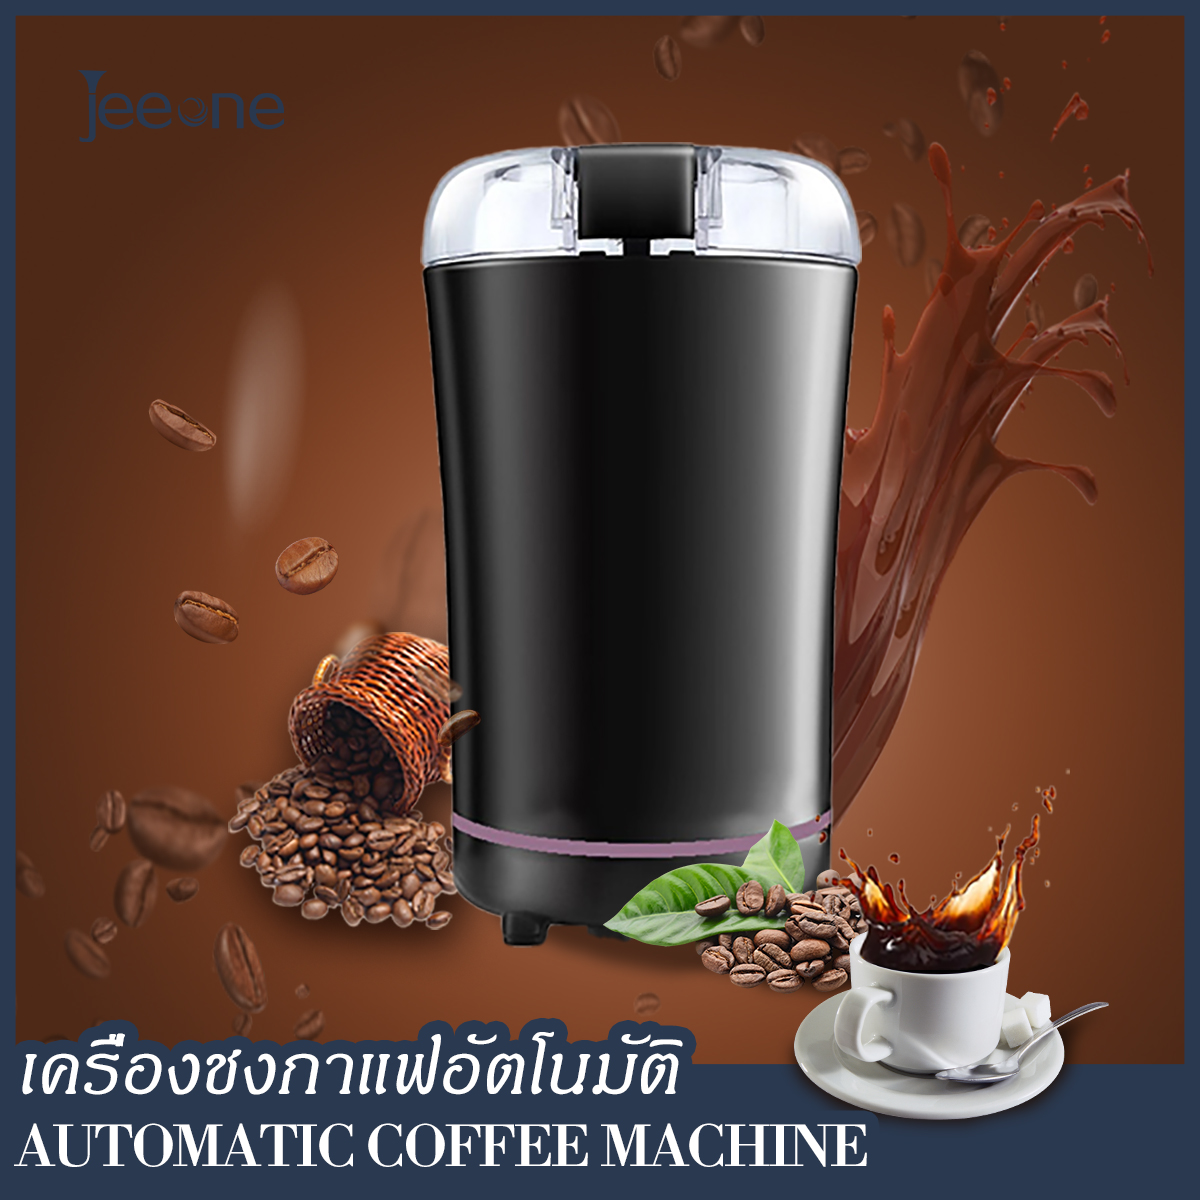 Jeeone Electric coffee grinder เครื่องบดกาแฟ เครื่องชงชา เครื่องบดธัญพืช แบบพกพา ผลิตจากวัสดุ สแตนเลส คุณภาพ ใบมีด บด ปั่น เม